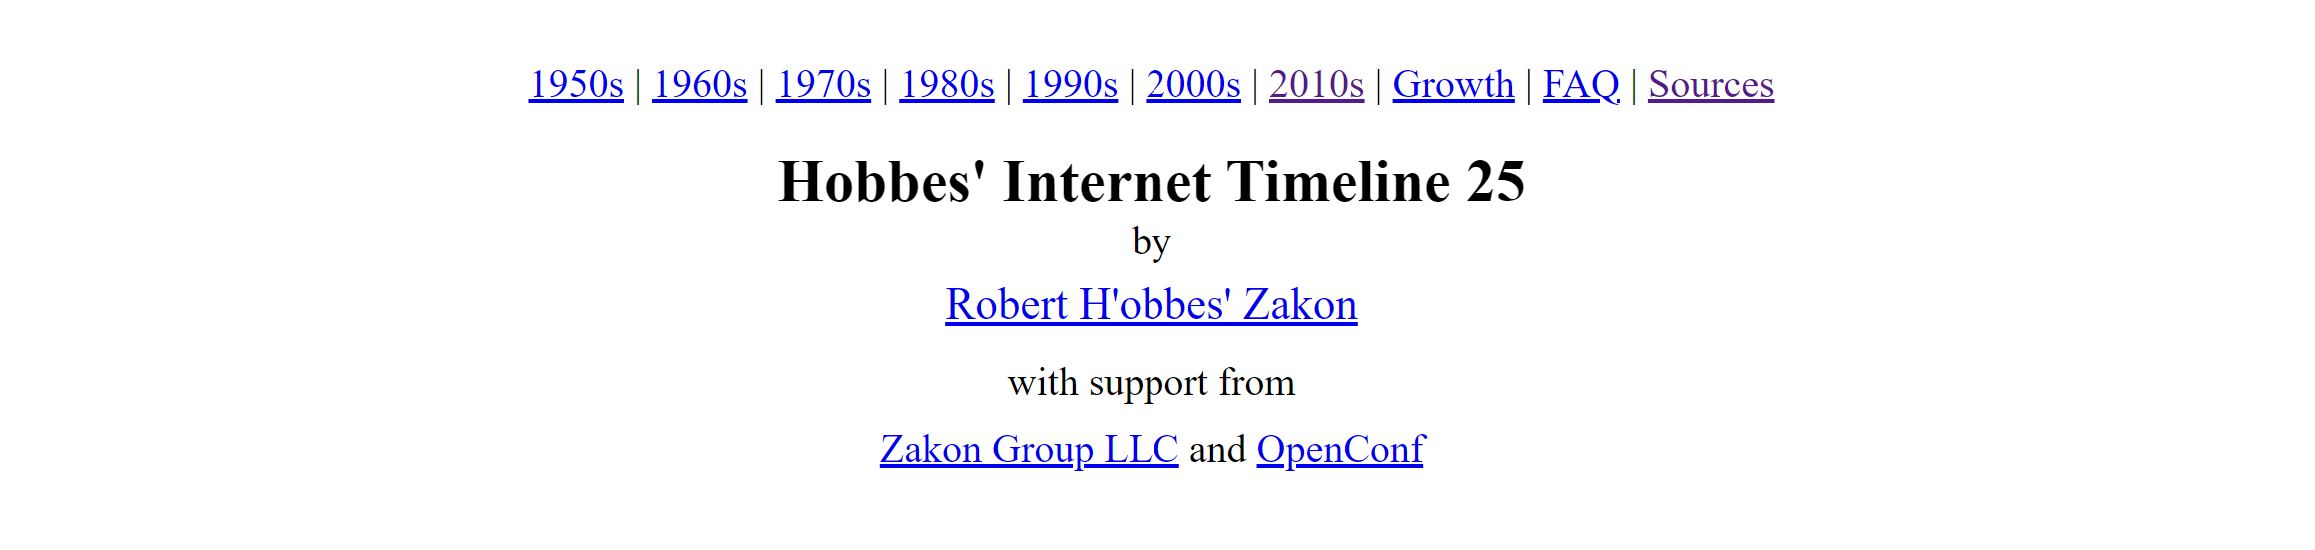 hobbes-internet-timeline-25